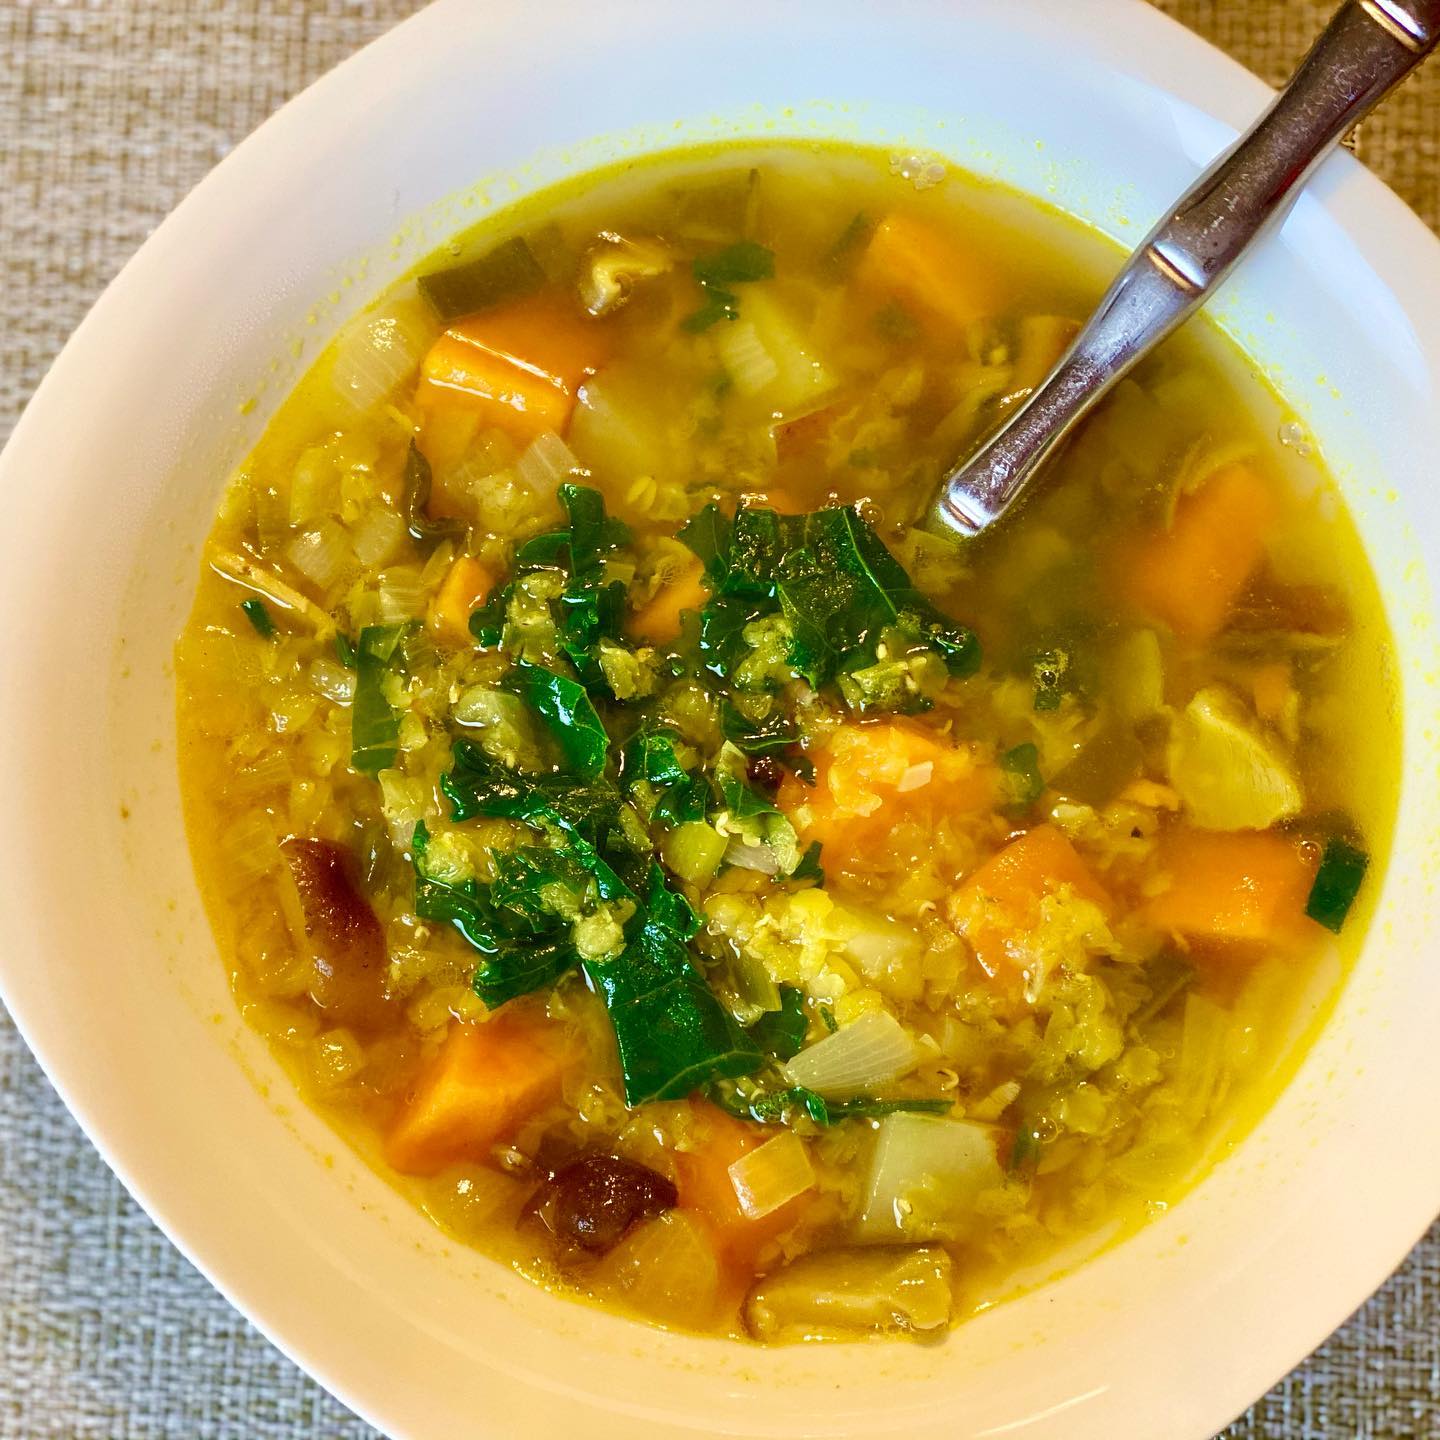 glutenfree- lentil soup with potato leeks